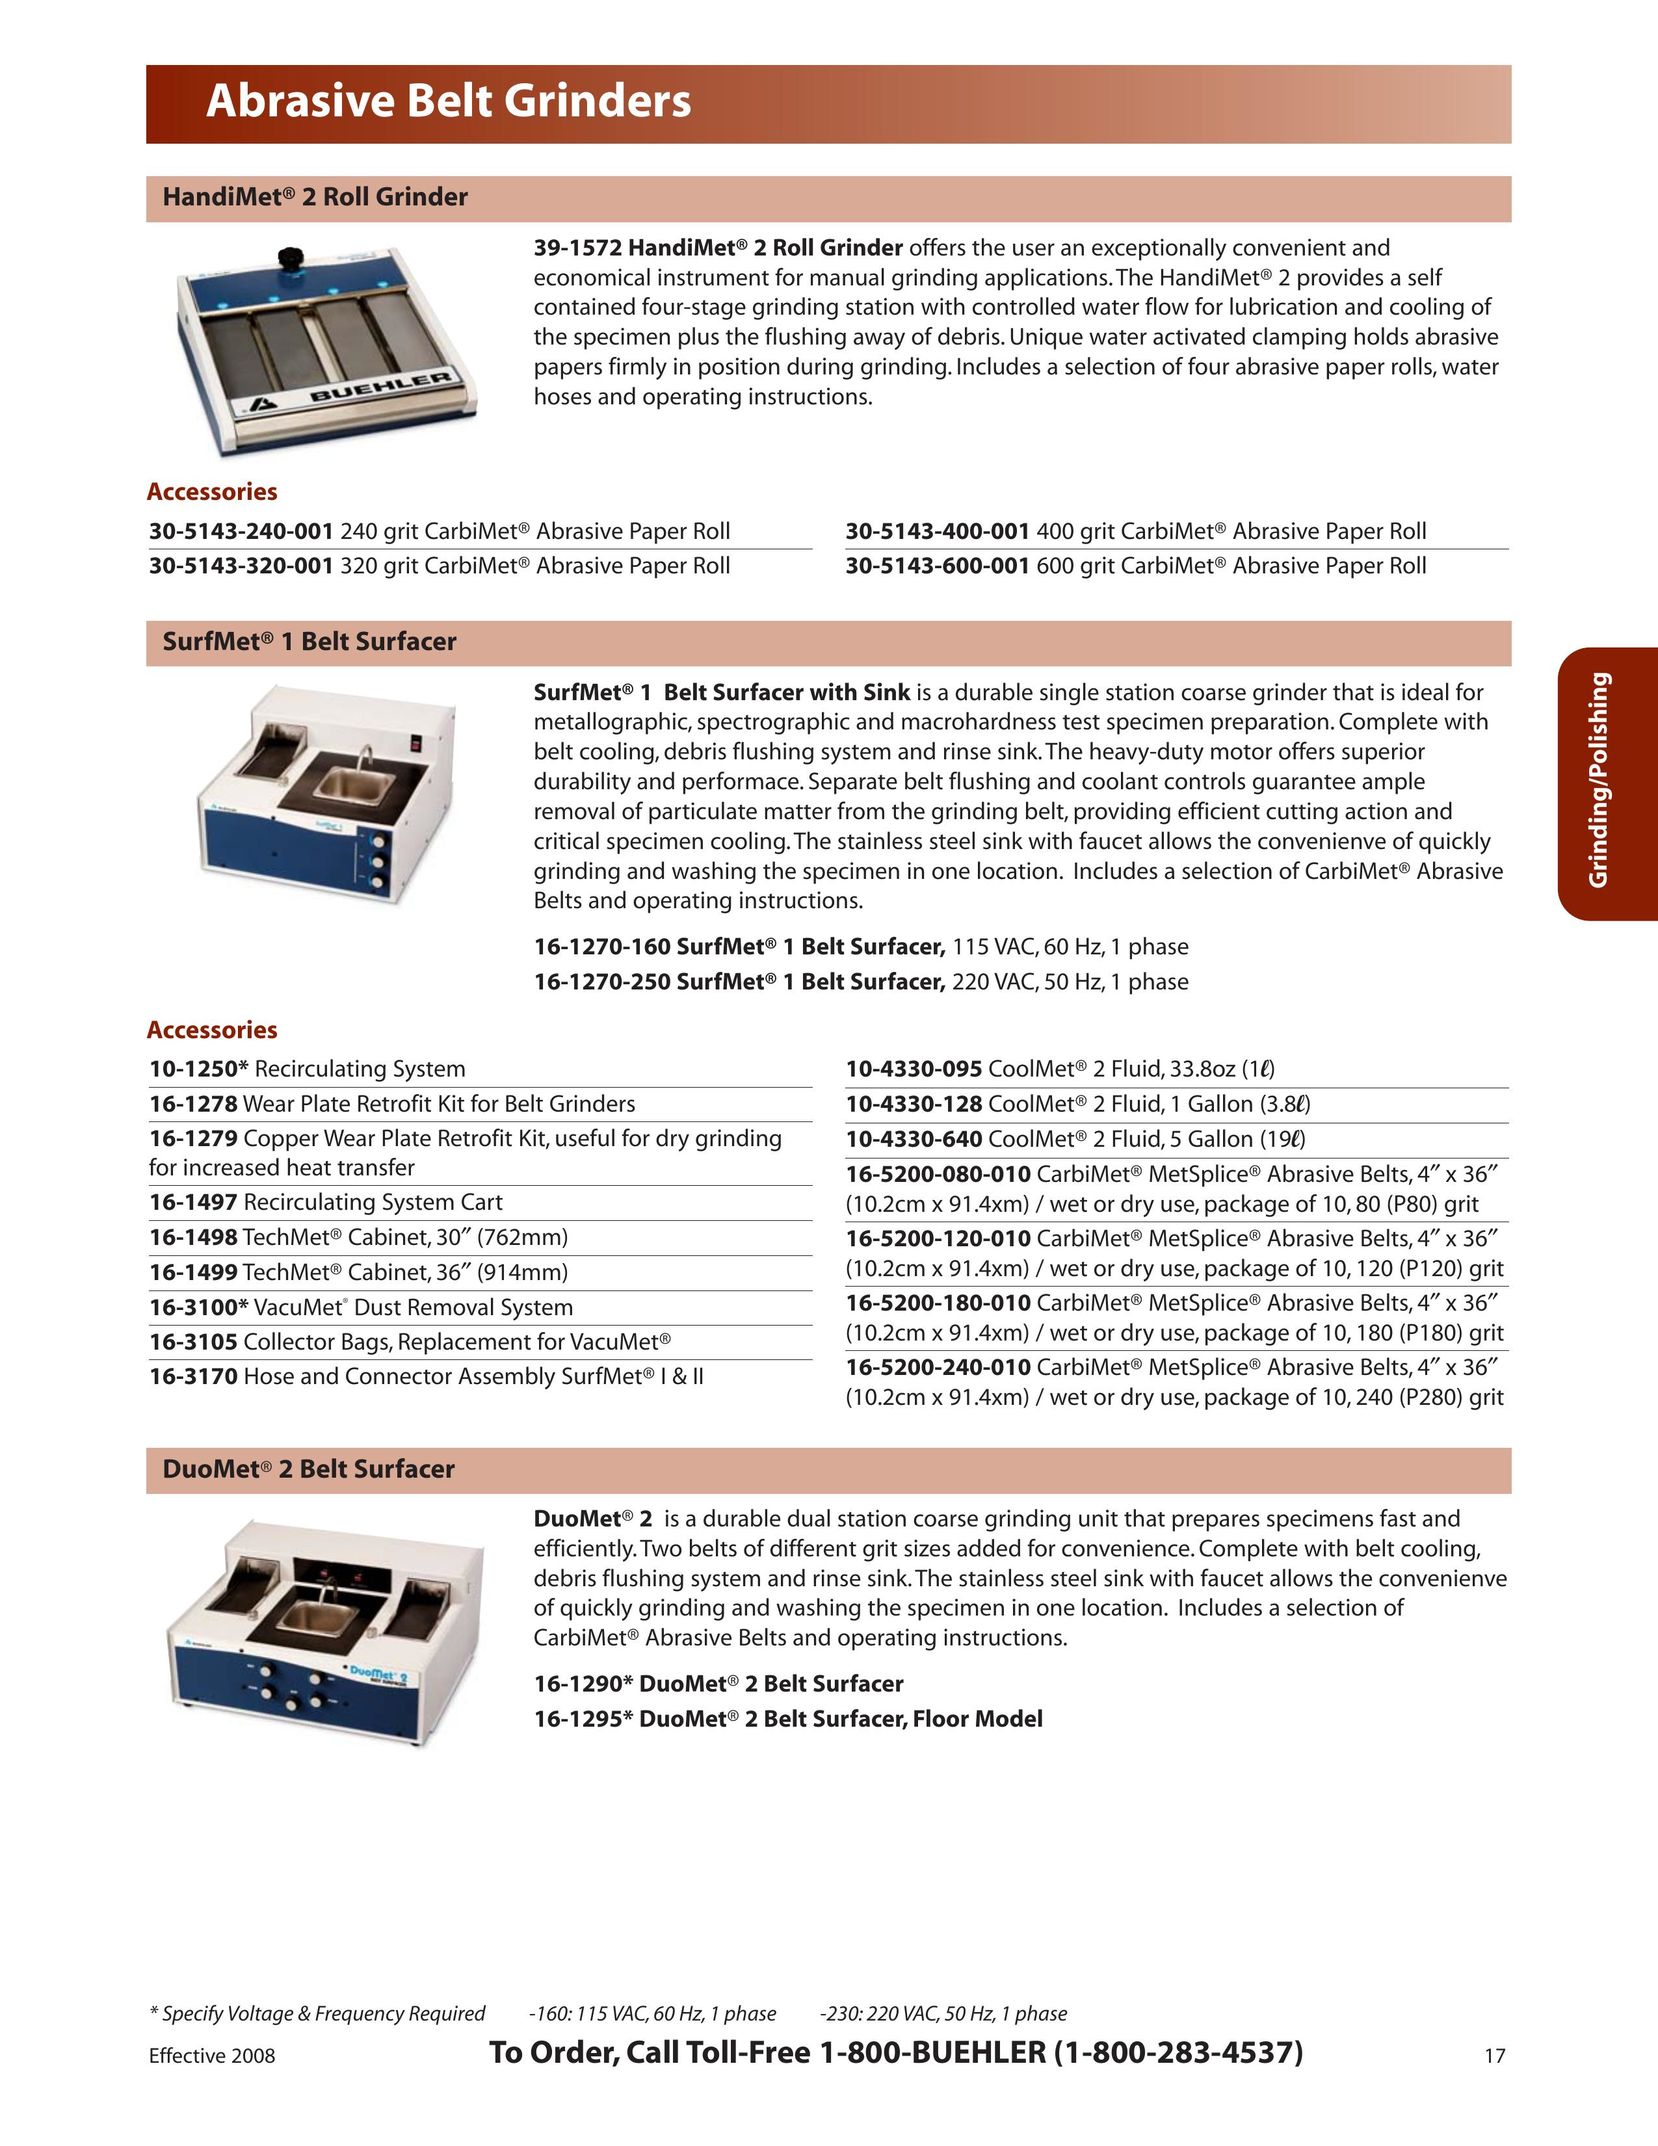 HP (Hewlett-Packard) 39-1572 Grinder User Manual